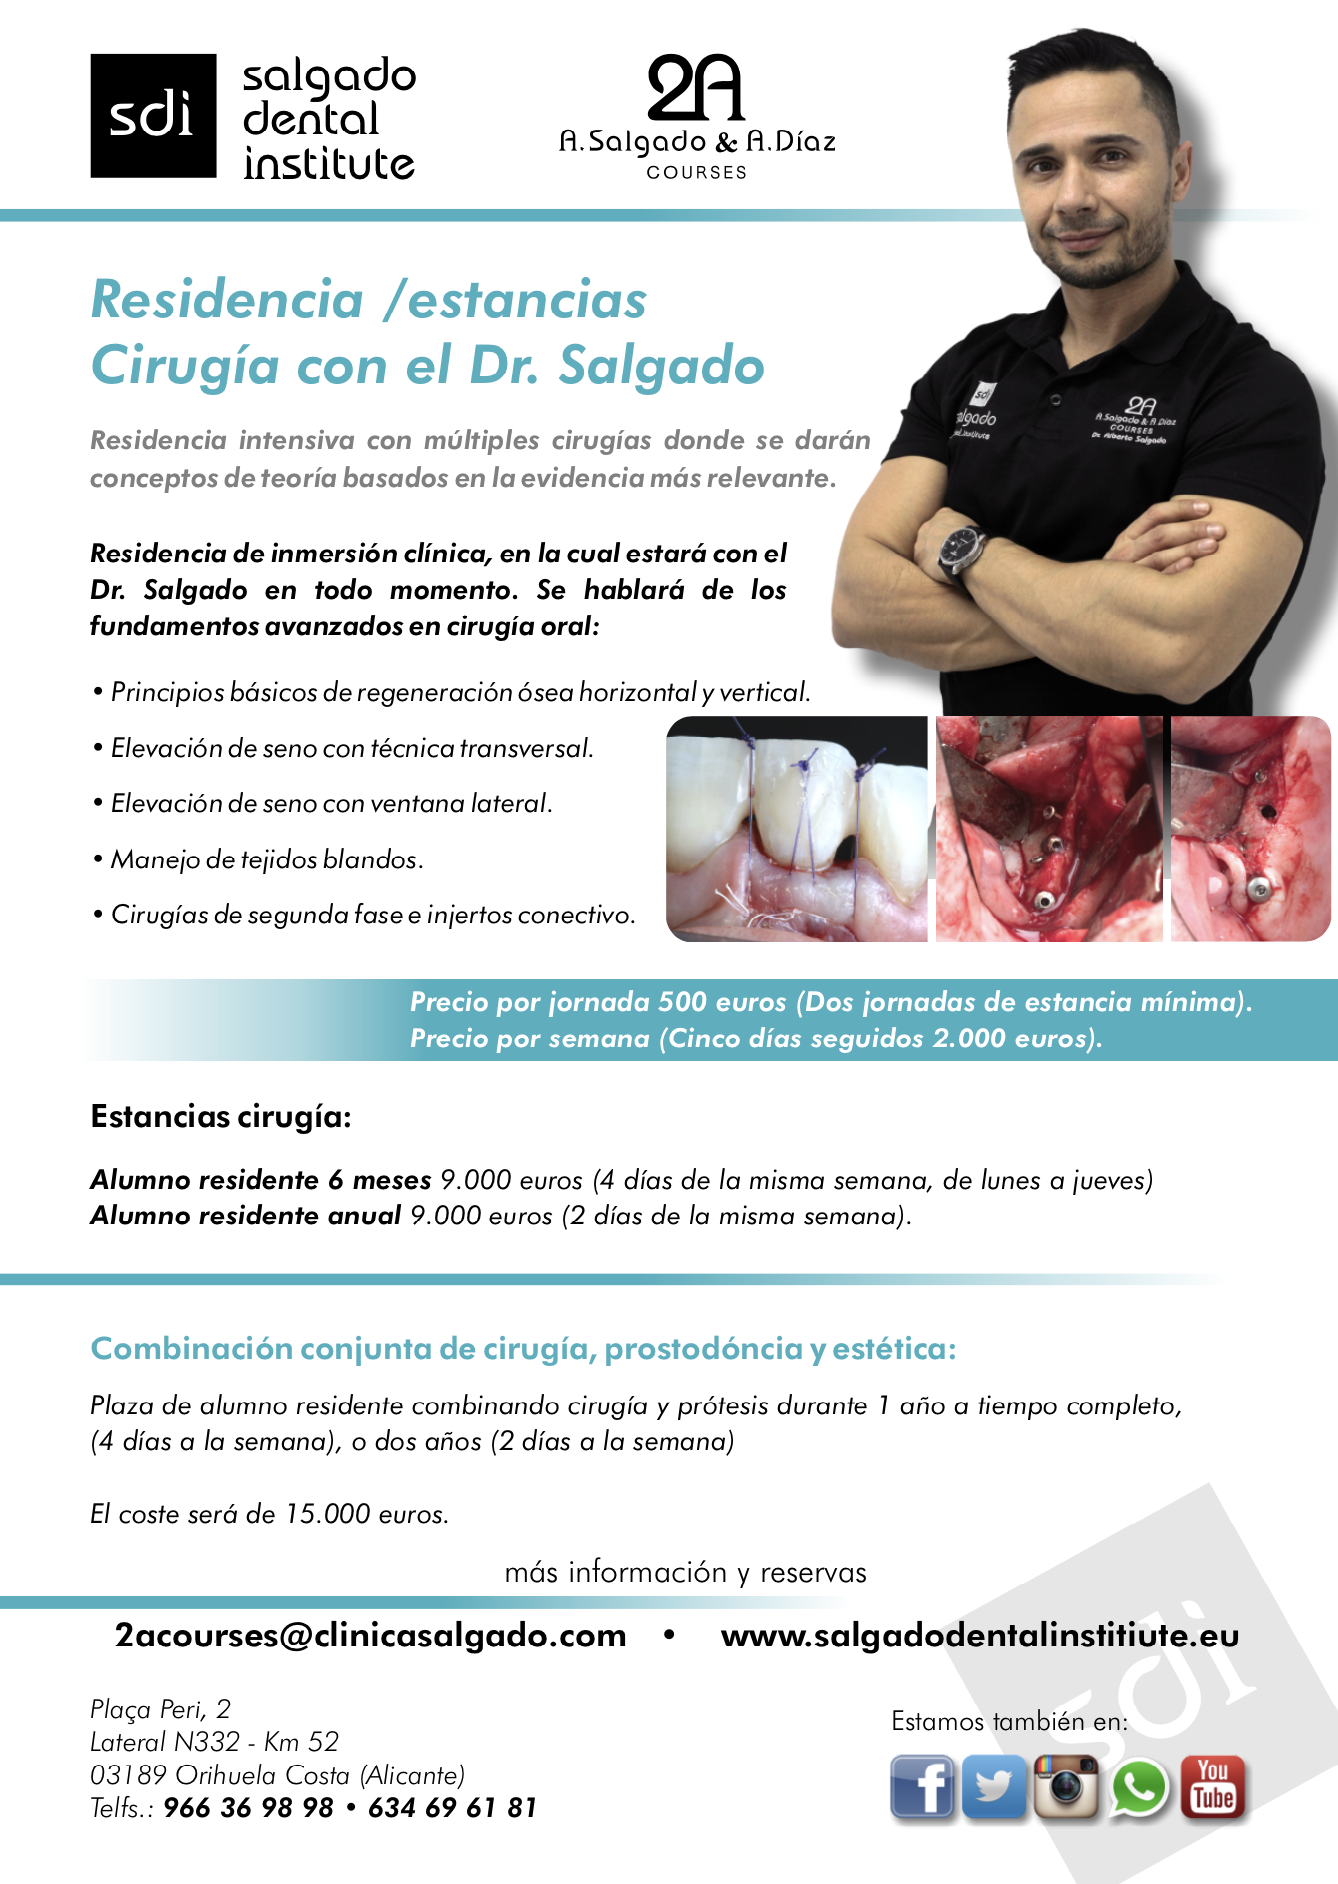 Residencia / Estancias Cirugía con el Dr. Salgado - SDI Salgado Dental Institute